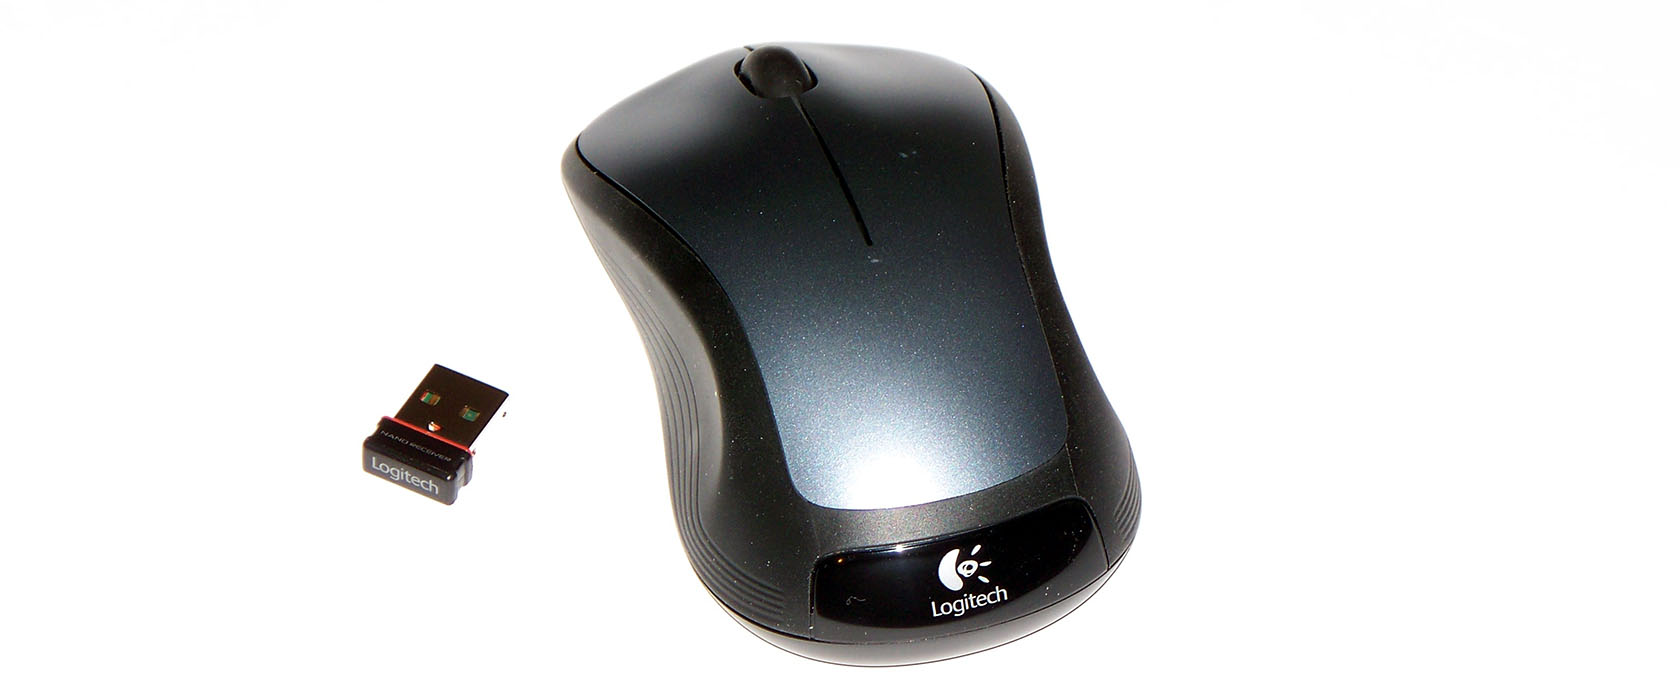 Logitech Wireless Mouse M310 price in Pakistan, Logitech in Pakistan at ...